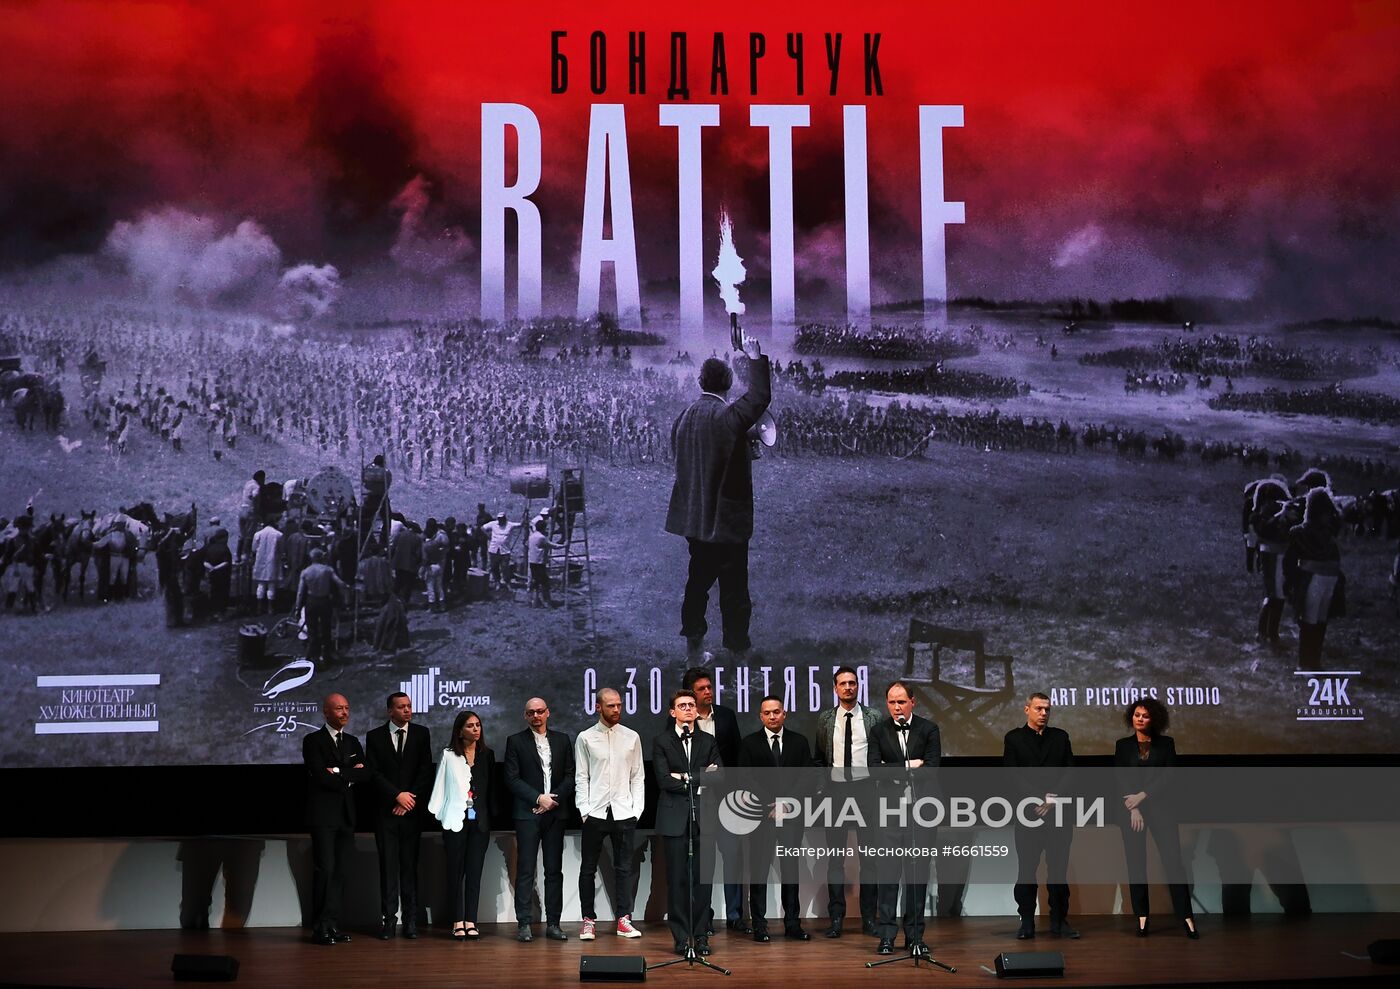 Премьера фильма "Бондарчук. Battle"